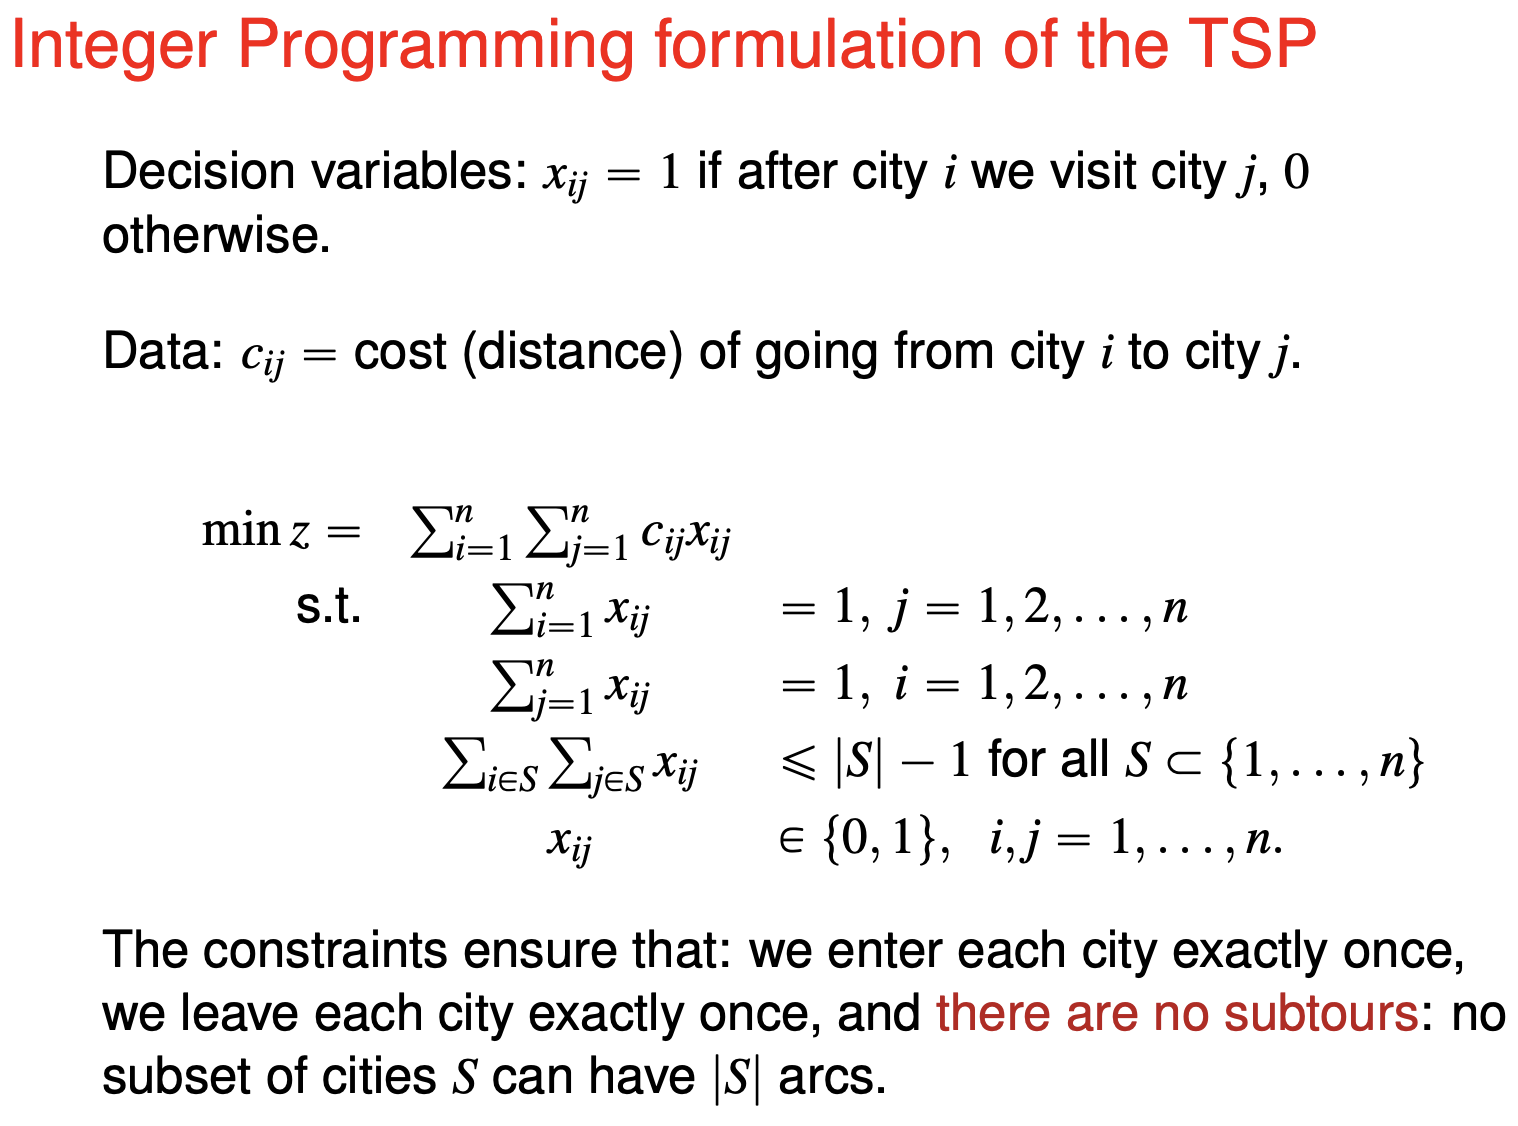 tsp-integer-programming-formulation